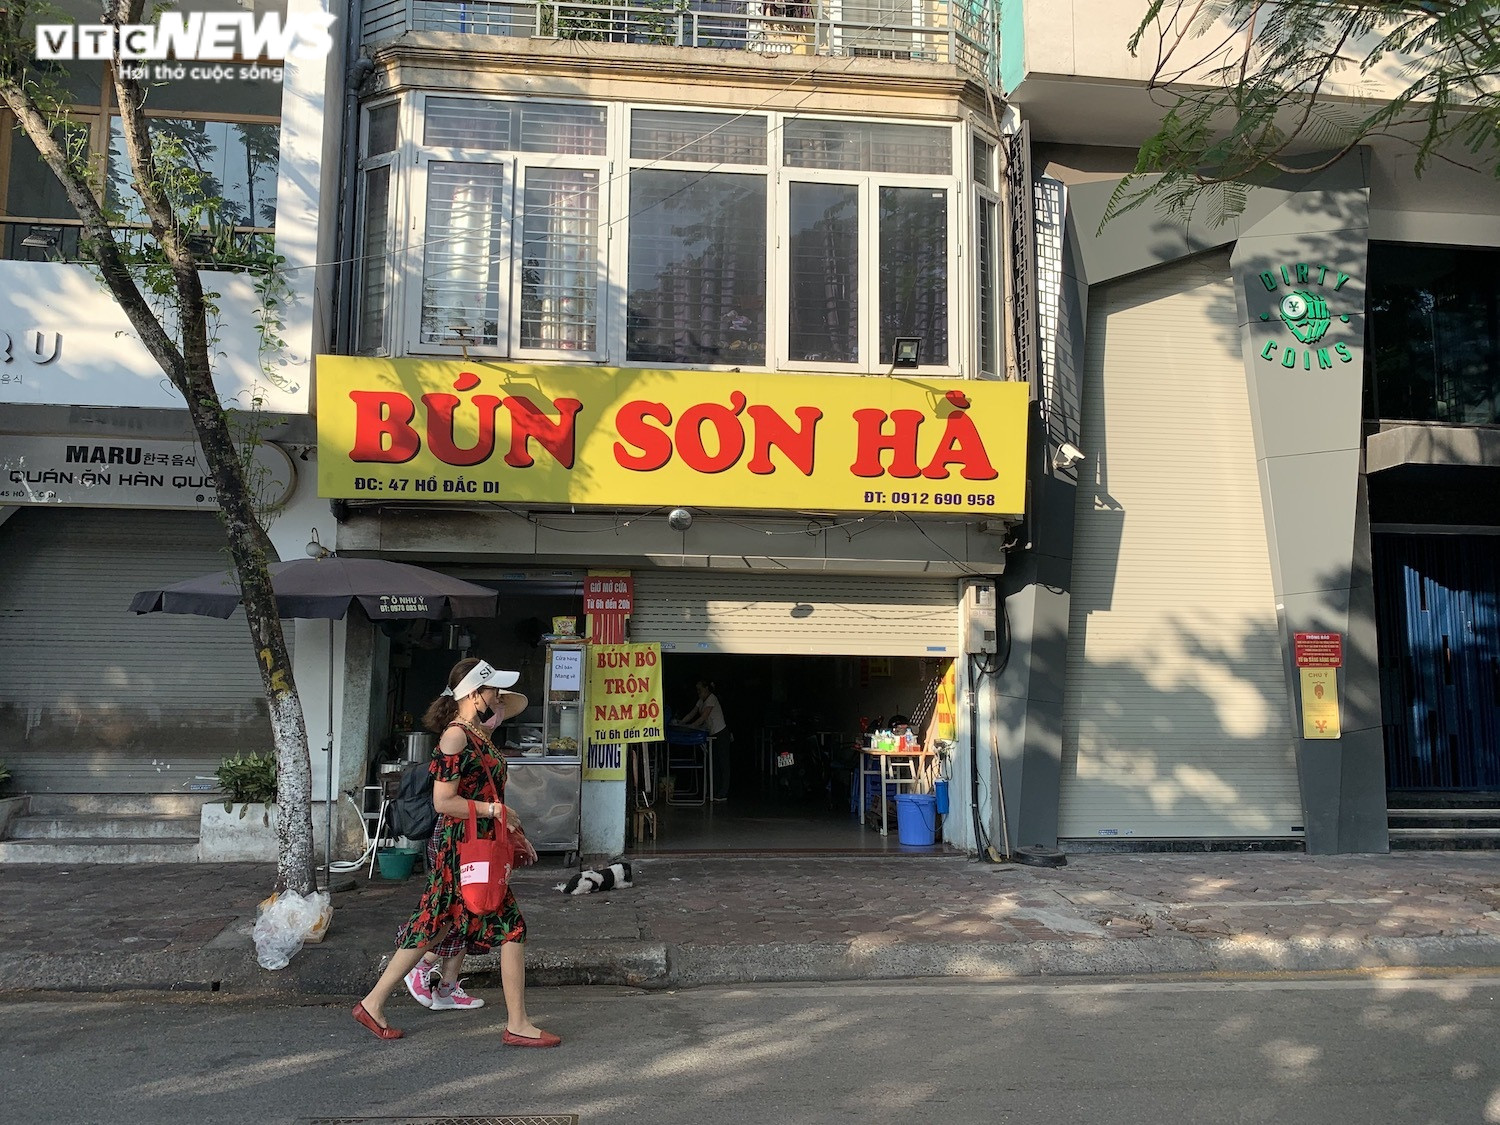 Phòng COVID-19, hàng quán ăn sáng ở Hà Nội nơi đóng cửa, nơi chỉ bán mang về  - 7